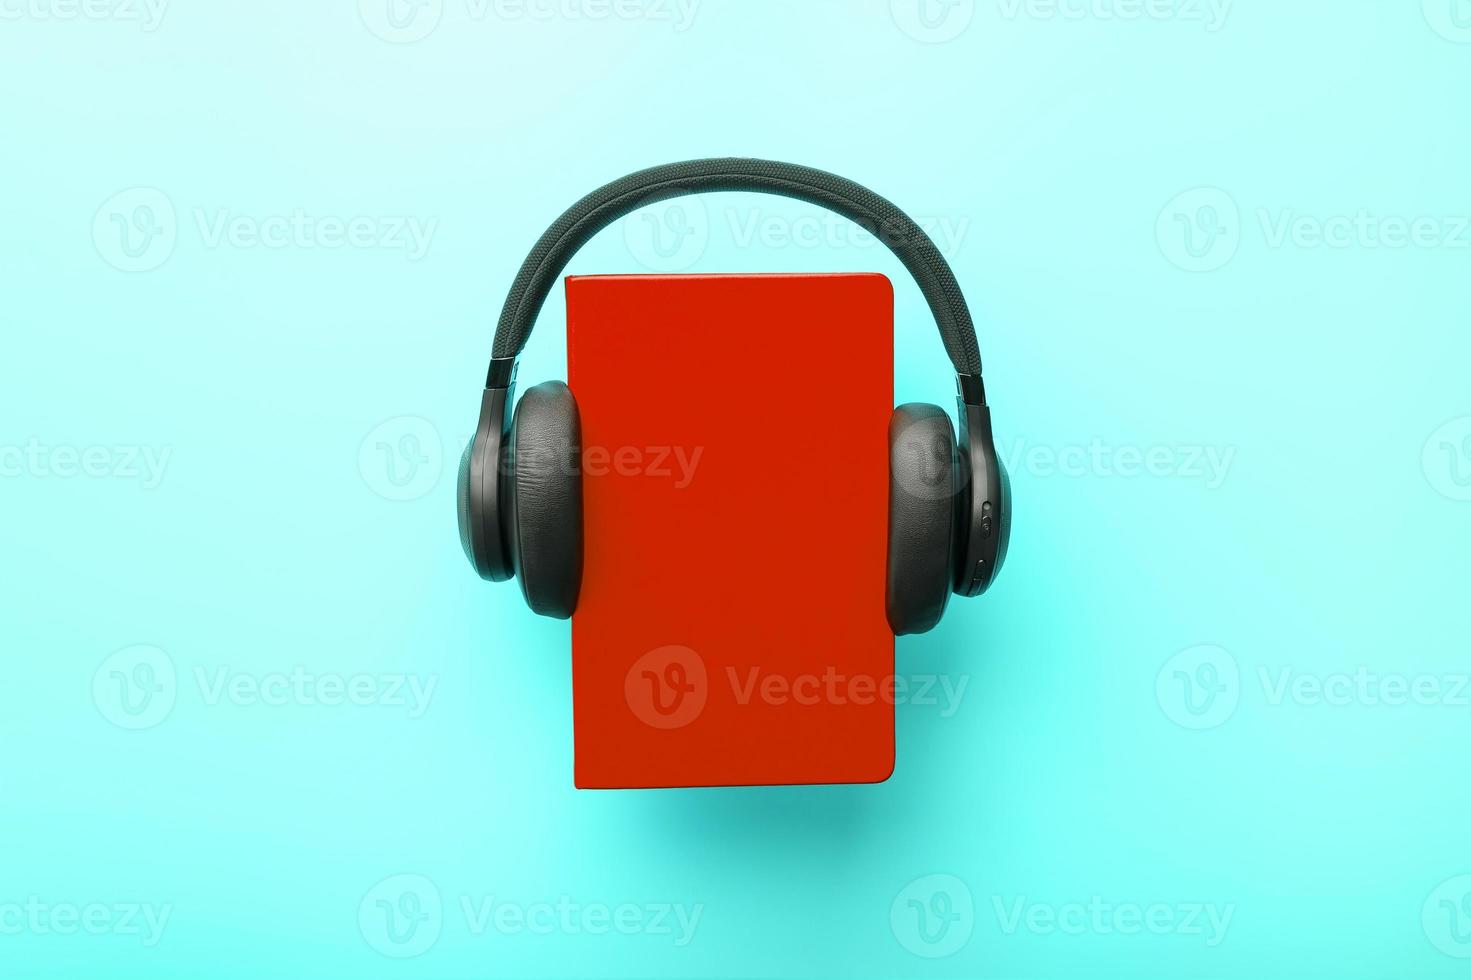 Kopfhörer werden auf einem Buch in einem roten Hardcover auf blauem Hintergrund getragen, Ansicht von oben. foto